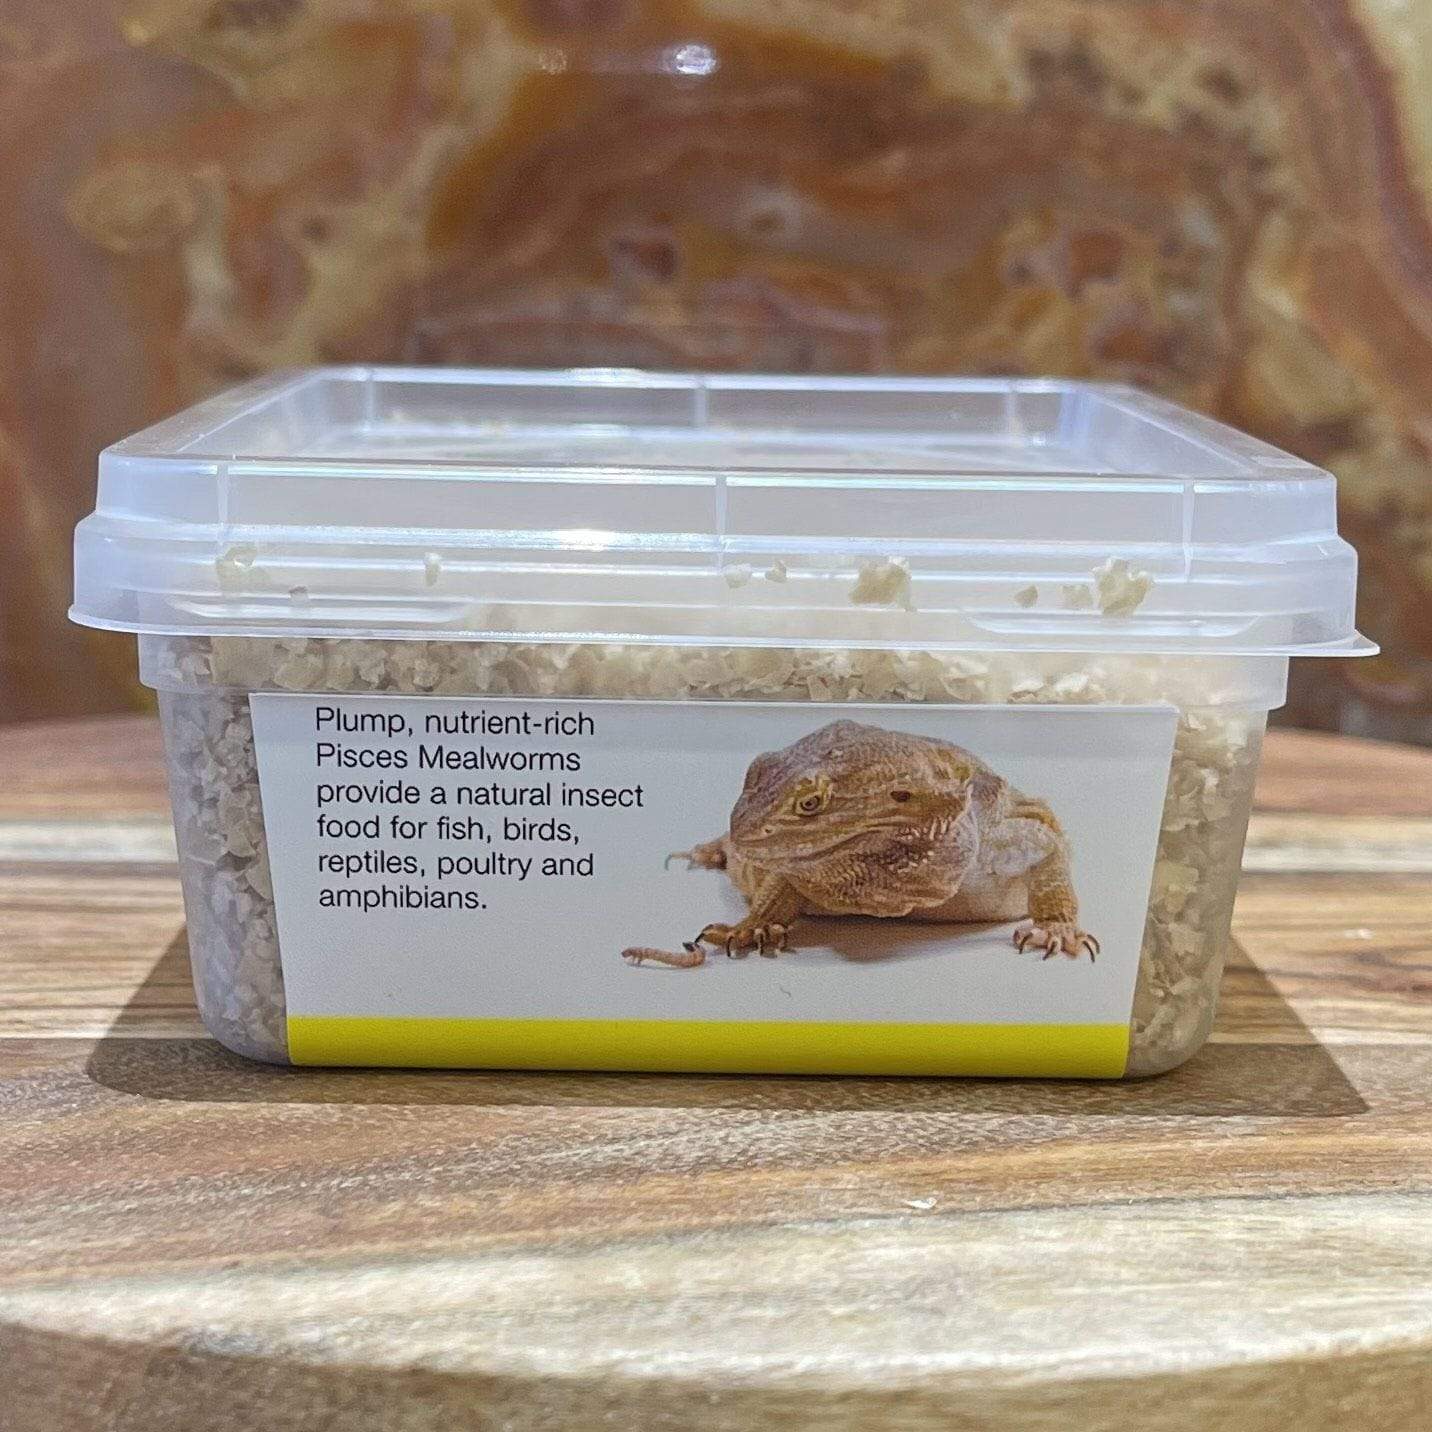 Pisces Enterprises Live Food Tub Mealworms - Regular 10g Tub